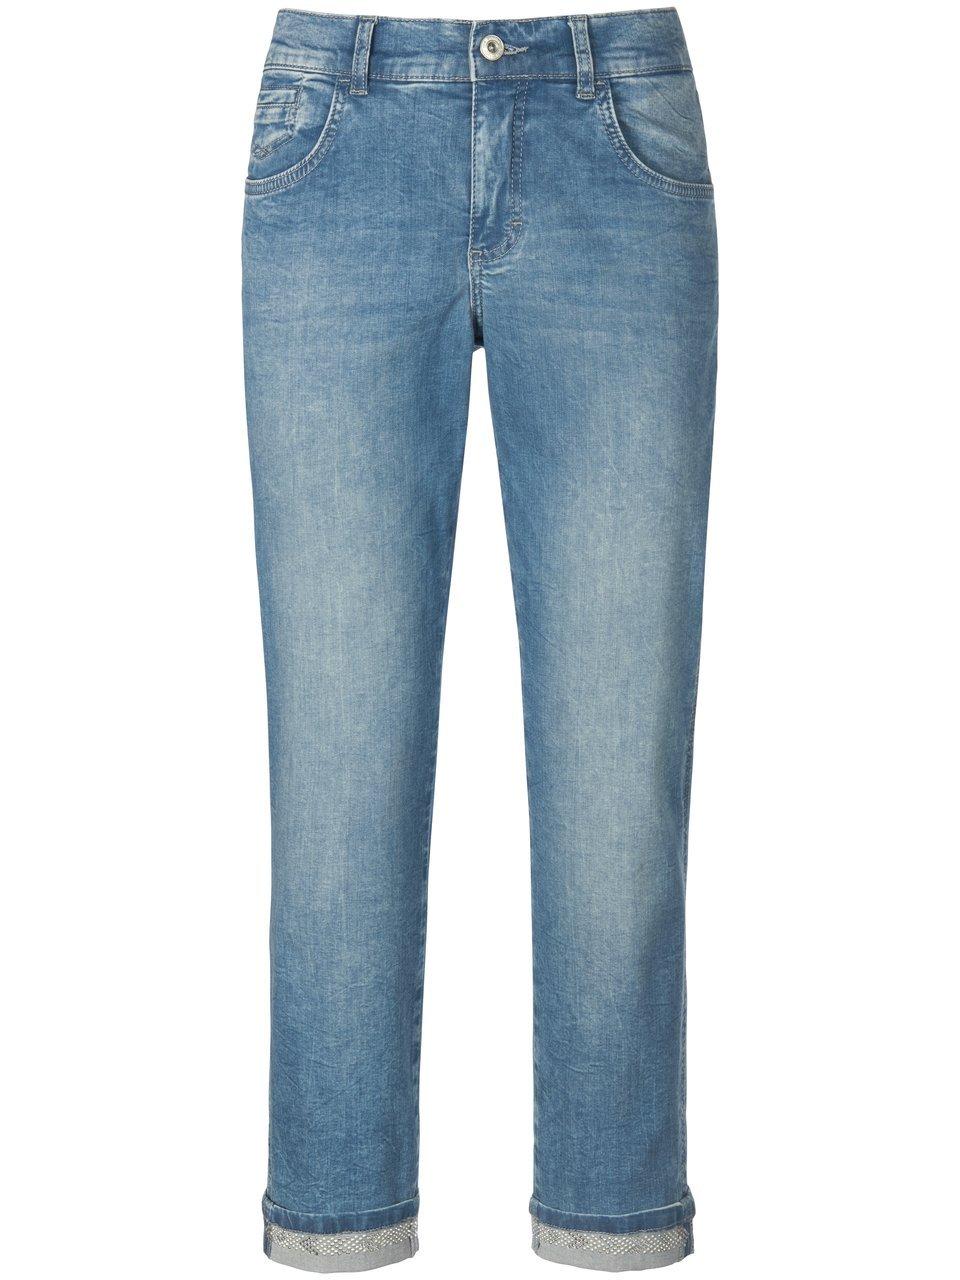 Enkellange jeans model Darleen Van ANGELS denim